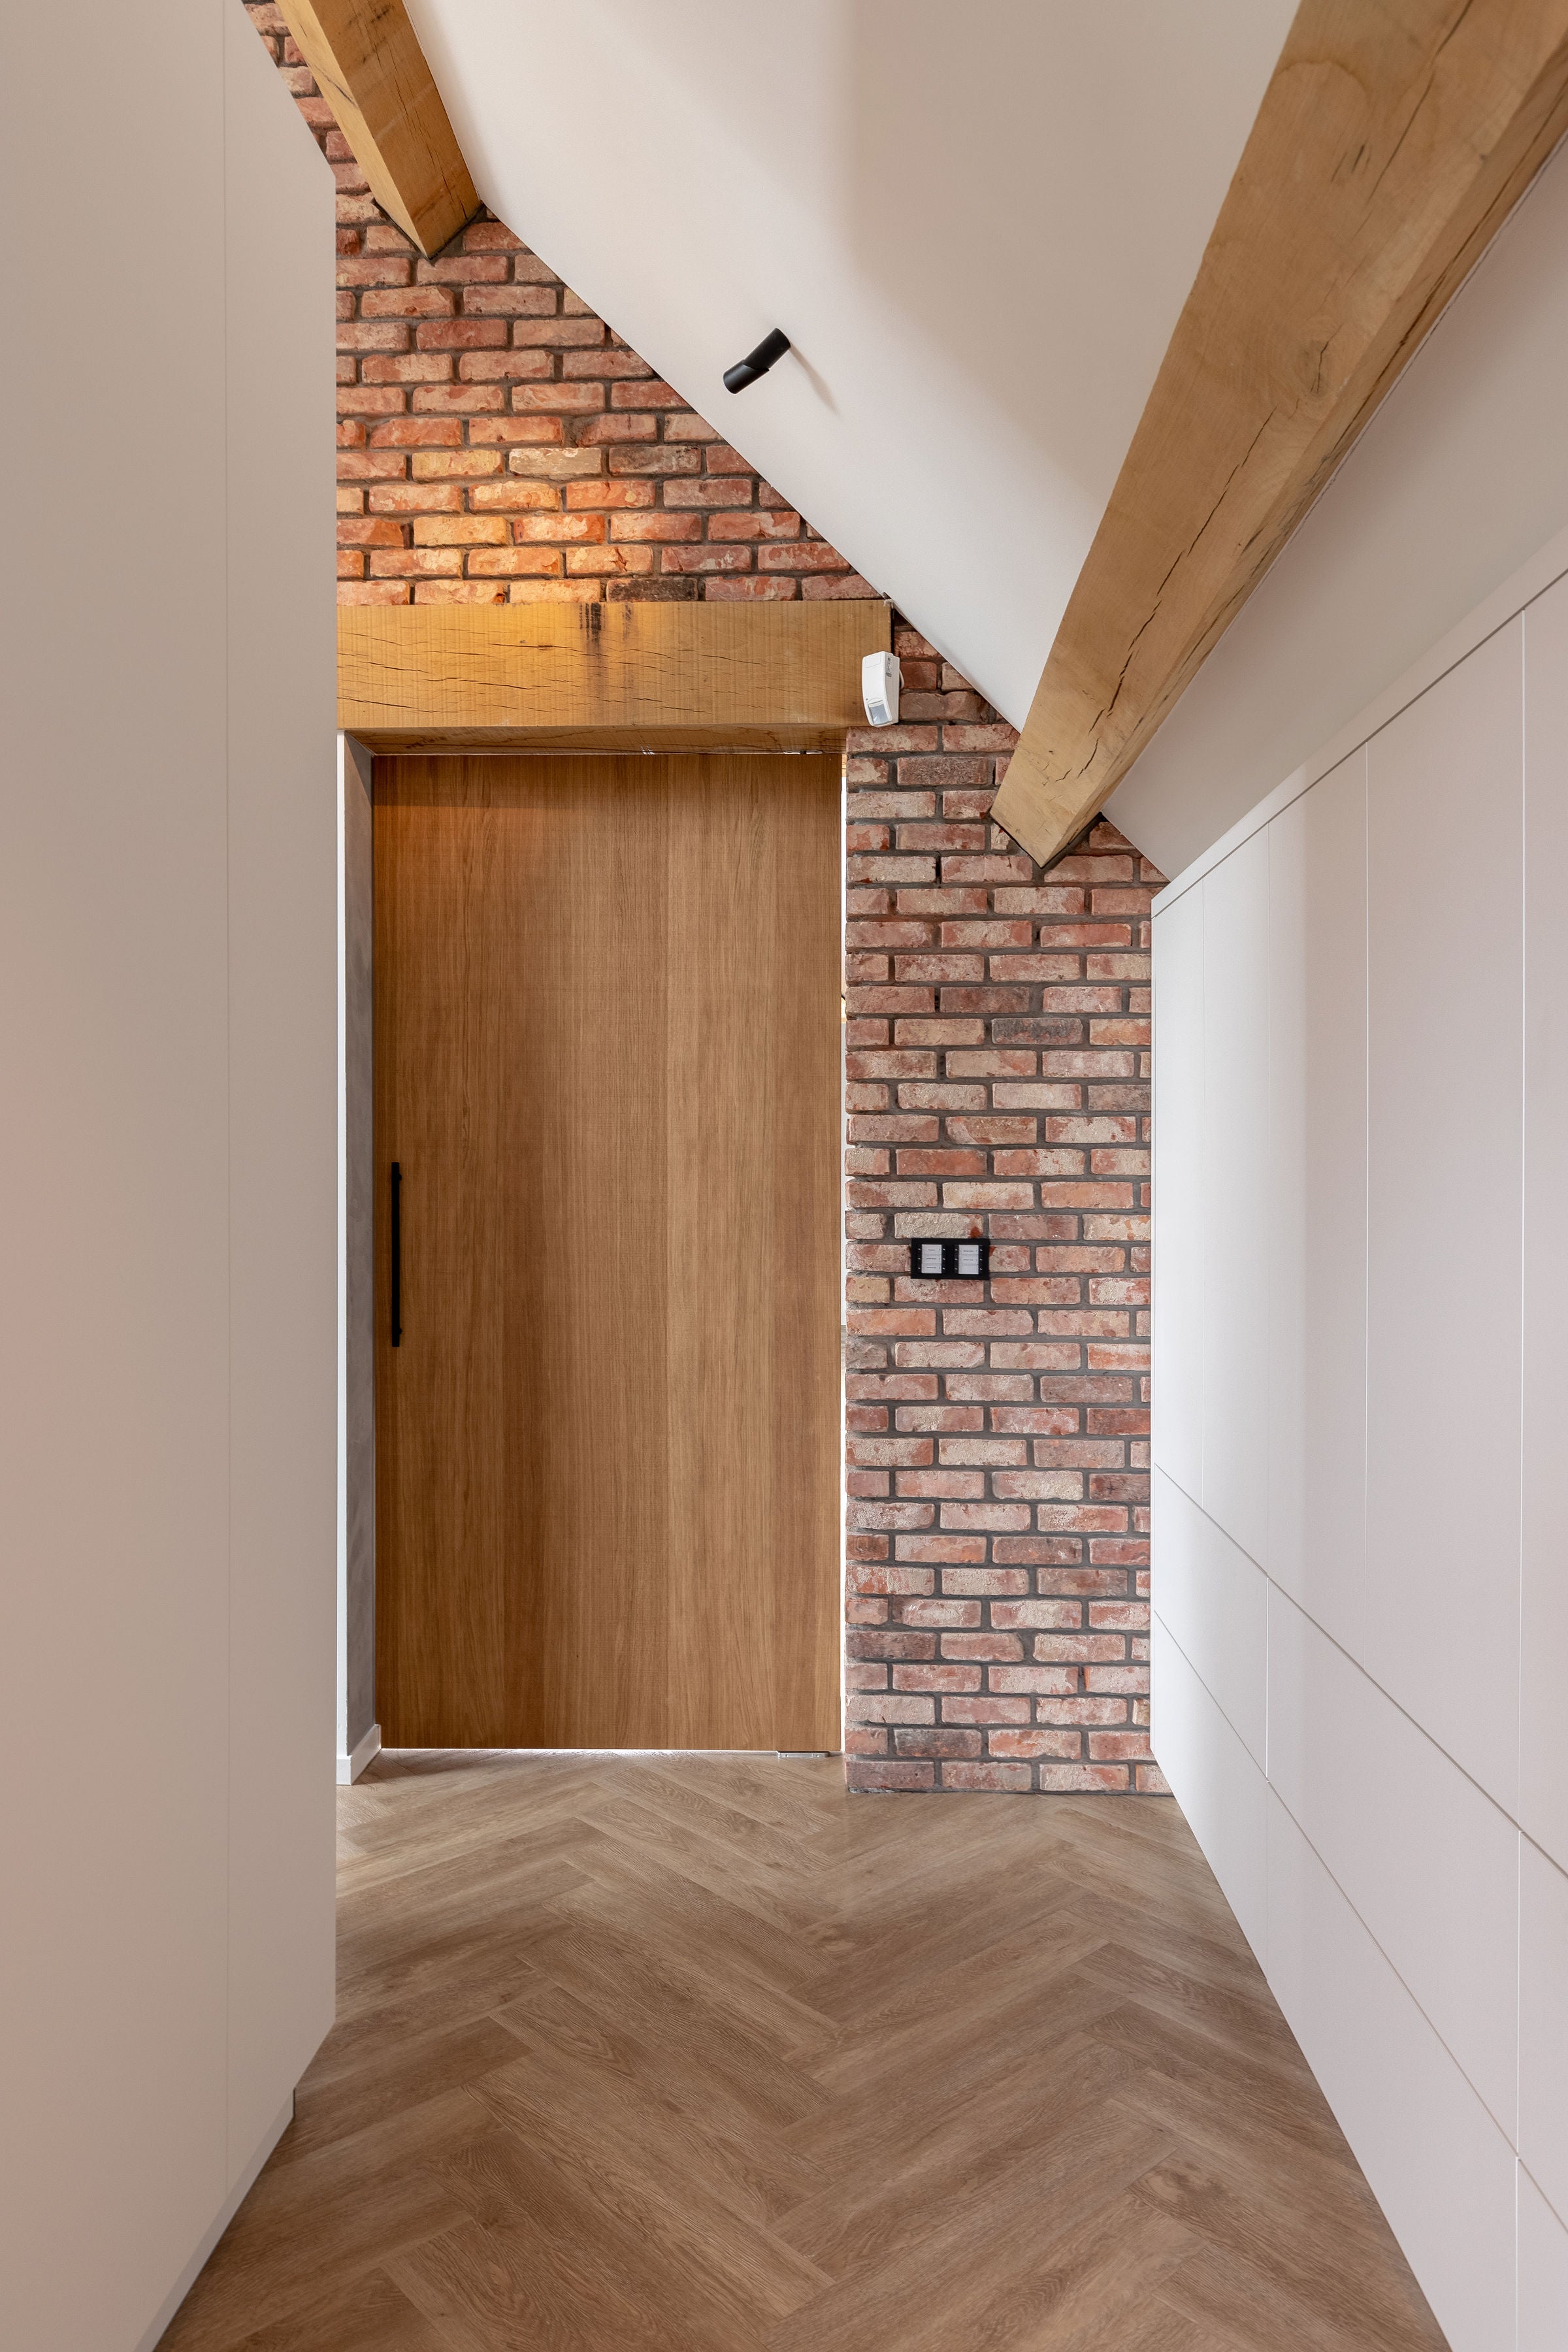 wooden door - Querkus - veneer floor - veneer